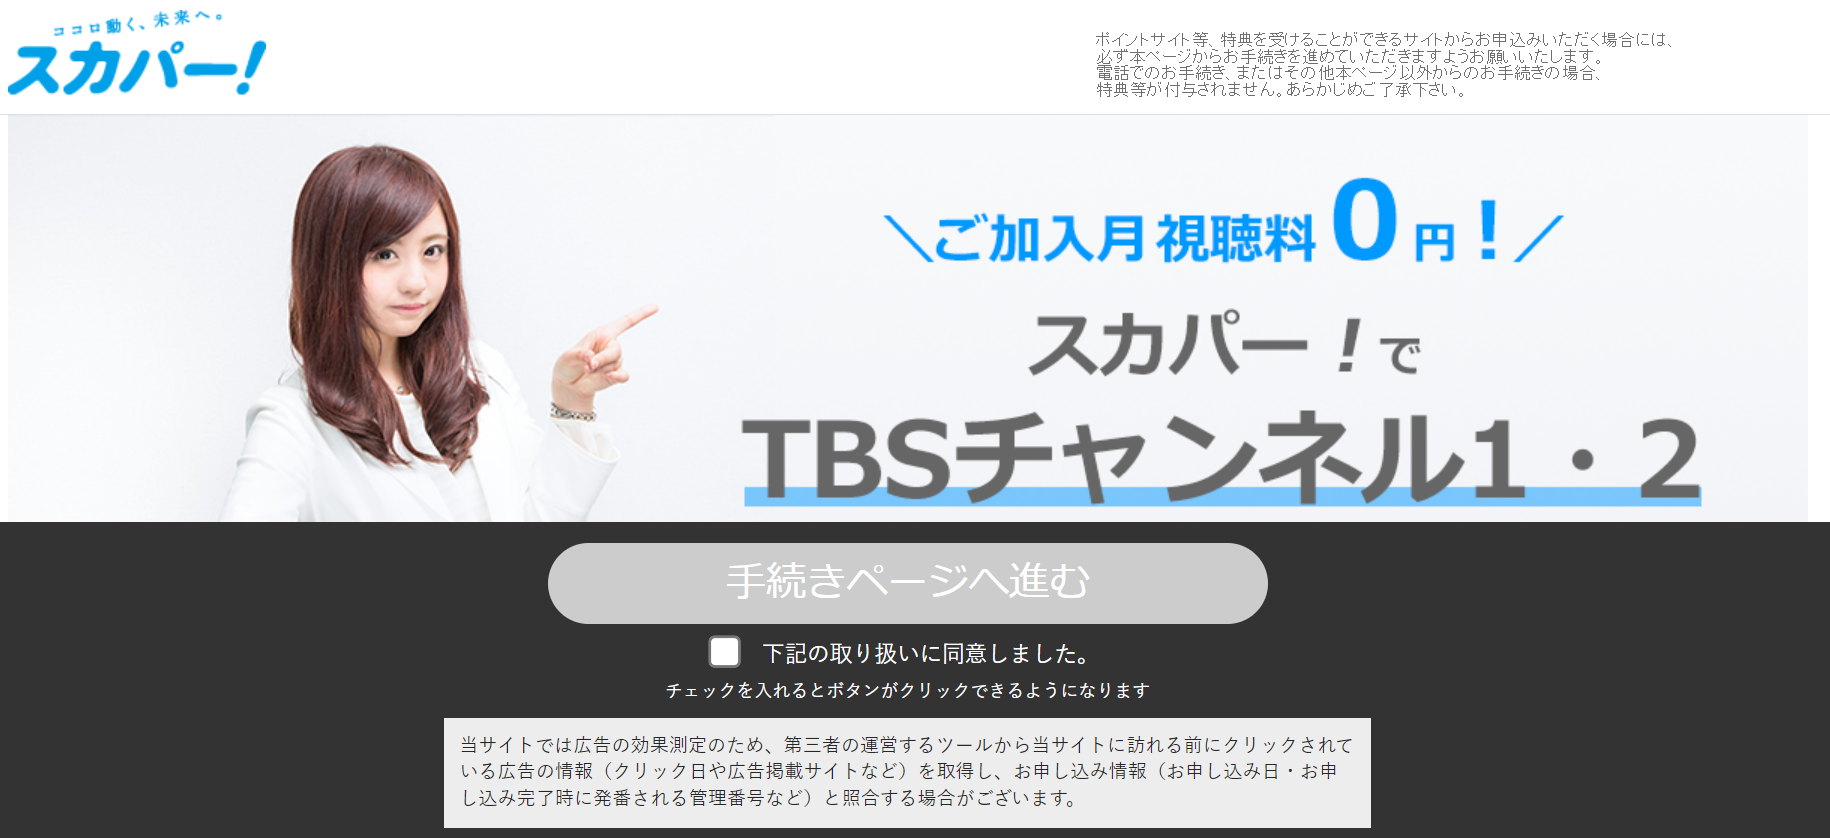 TBSチャンネル